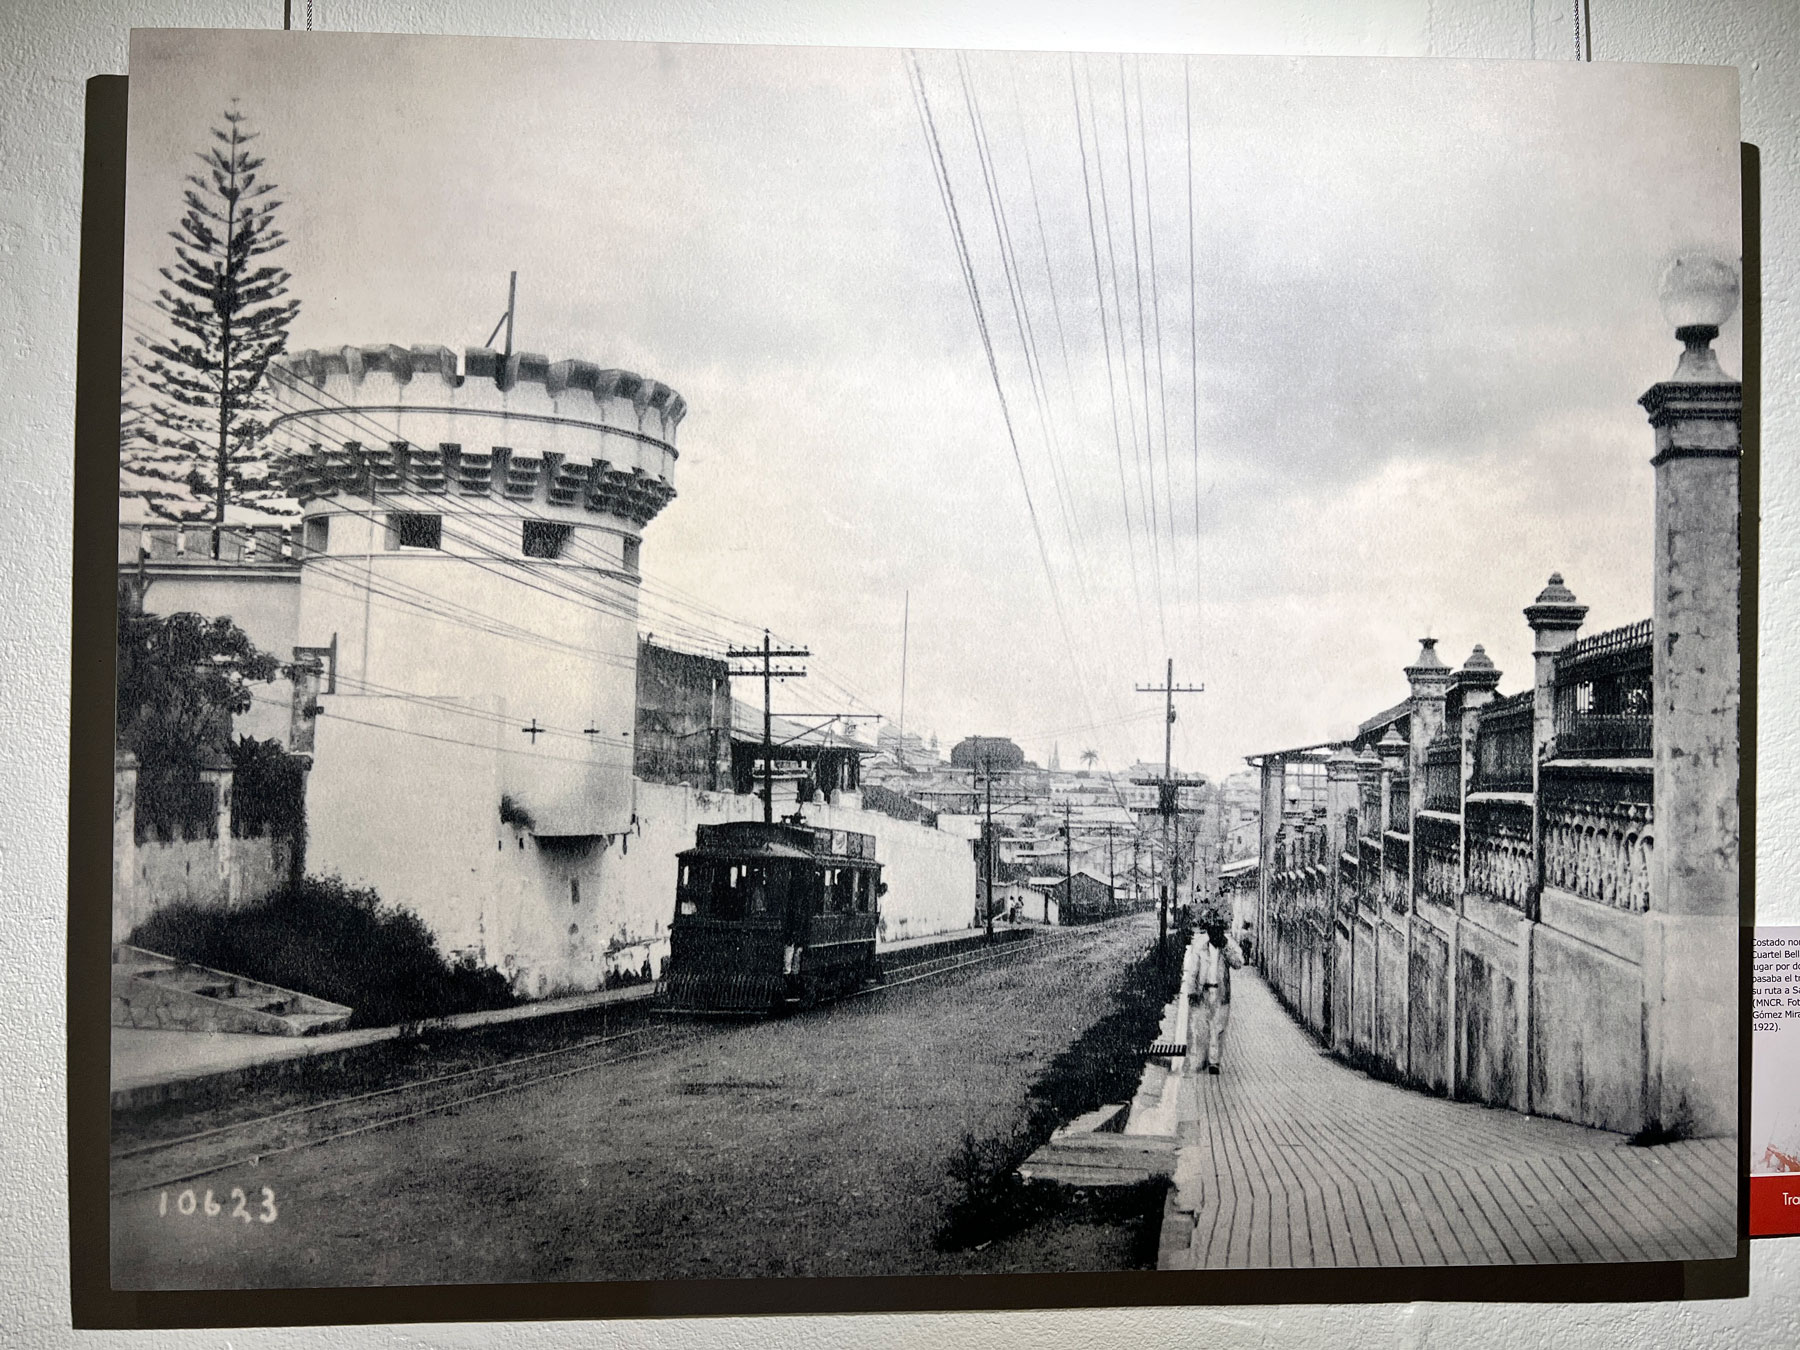 Costado norte del Cuartel Bellavista. El tranvía pasaba por este lado del edificio en la ruta hacia San Pedro. (MNCR. Fotografía: Manuel Gómez Miralles, 1922)